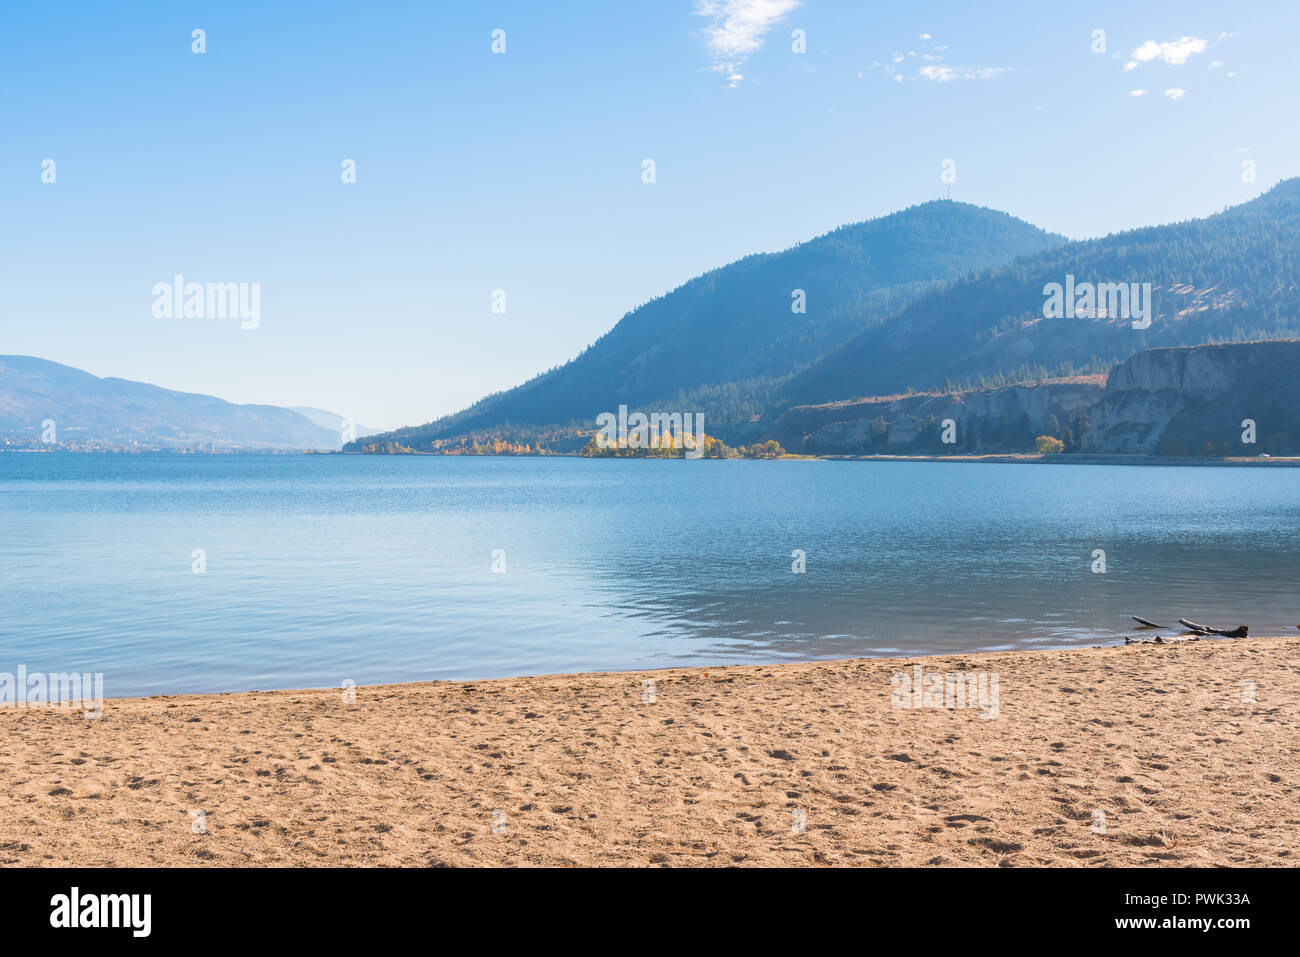 Lago con playa de arena, montañas y cielo azul Foto de stock